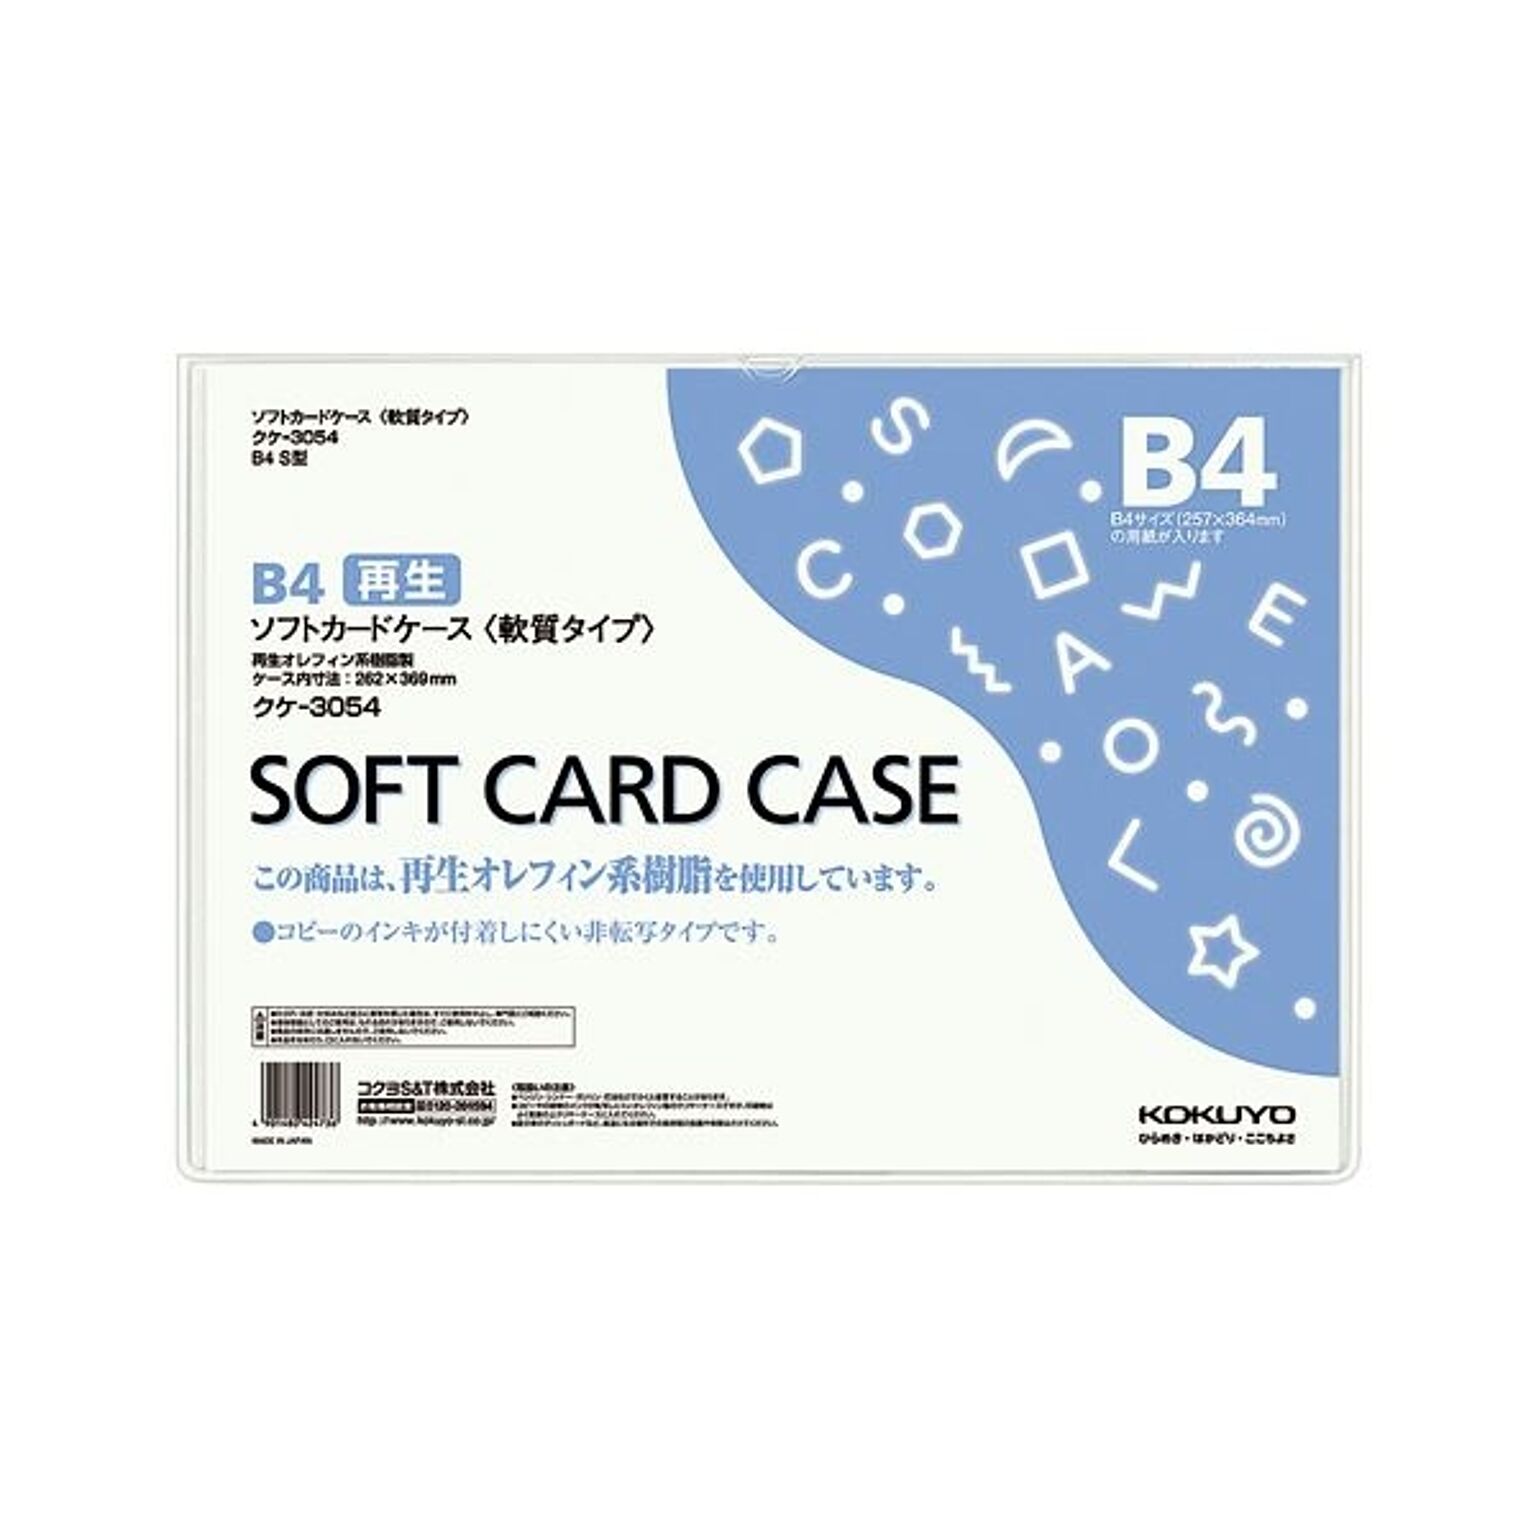 （まとめ）コクヨ ソフトカードケース(軟質) B4クケ-3054 1枚 【×20セット】